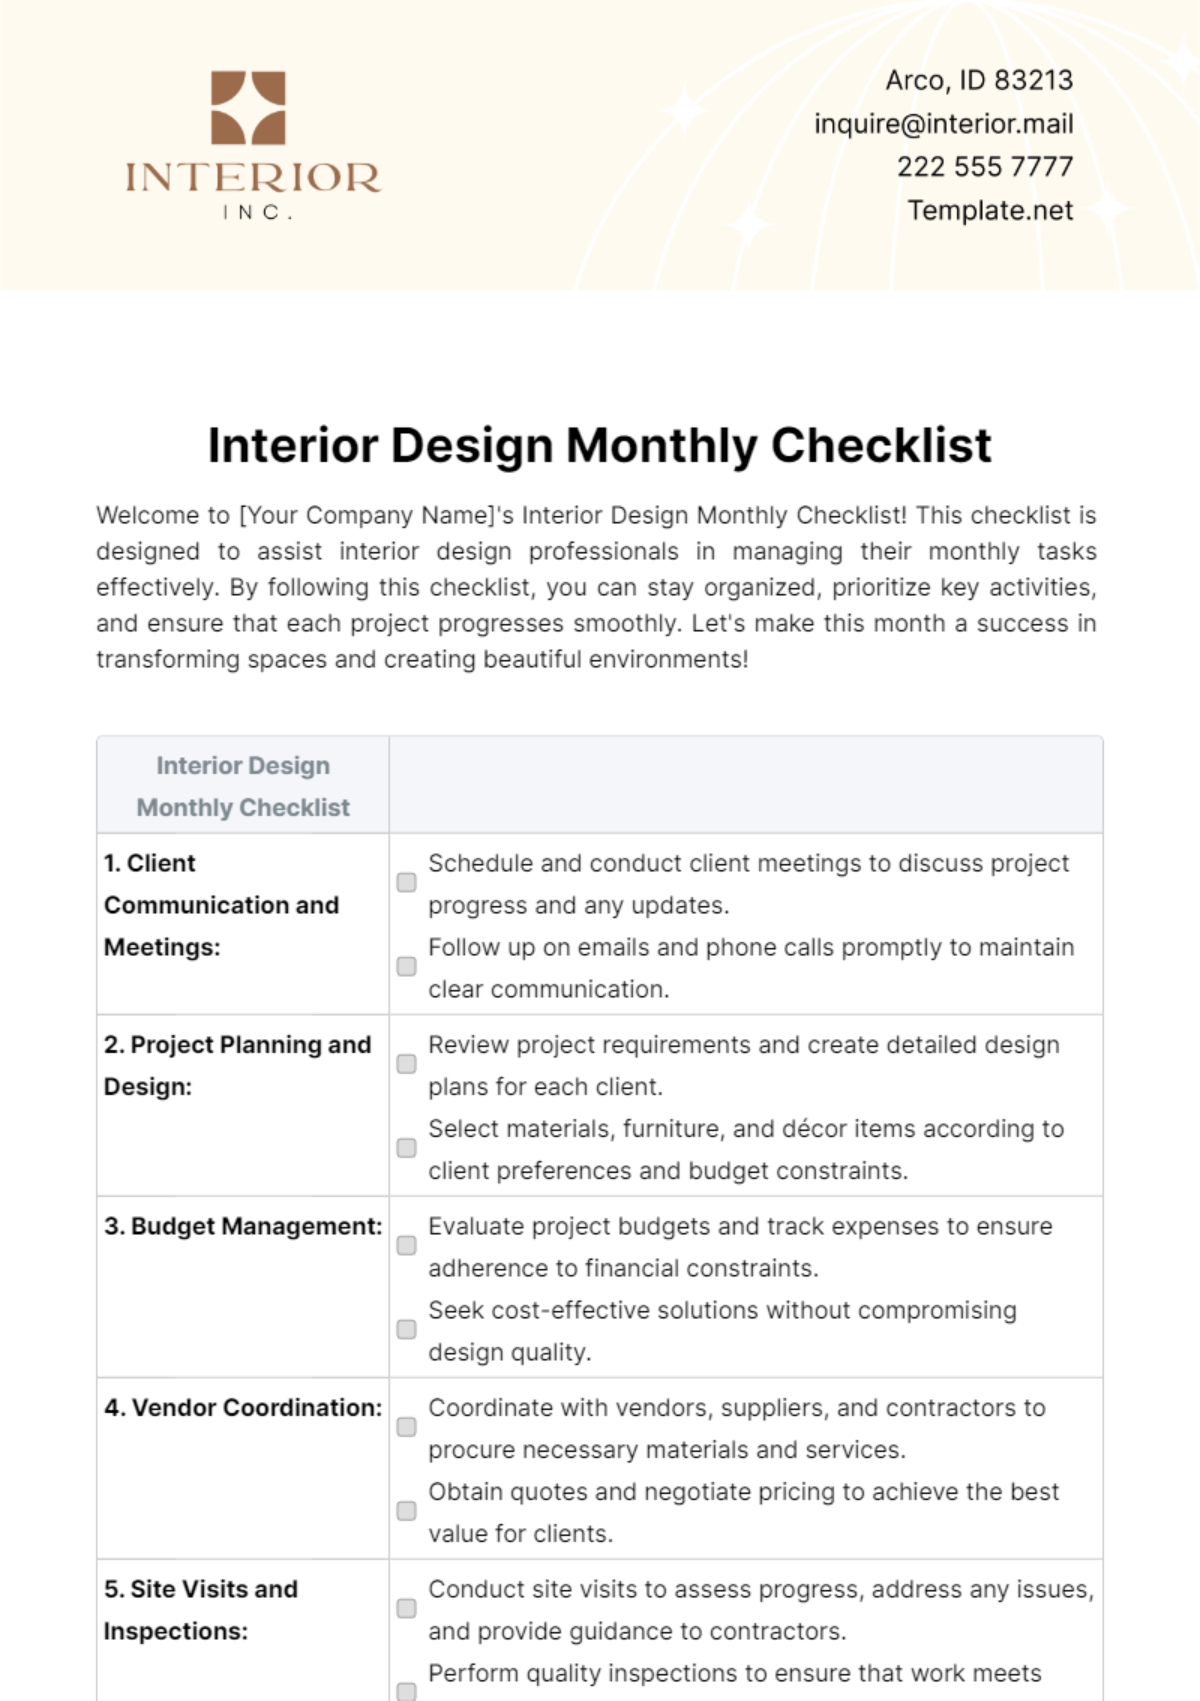 Interior Design Monthly Checklist Template